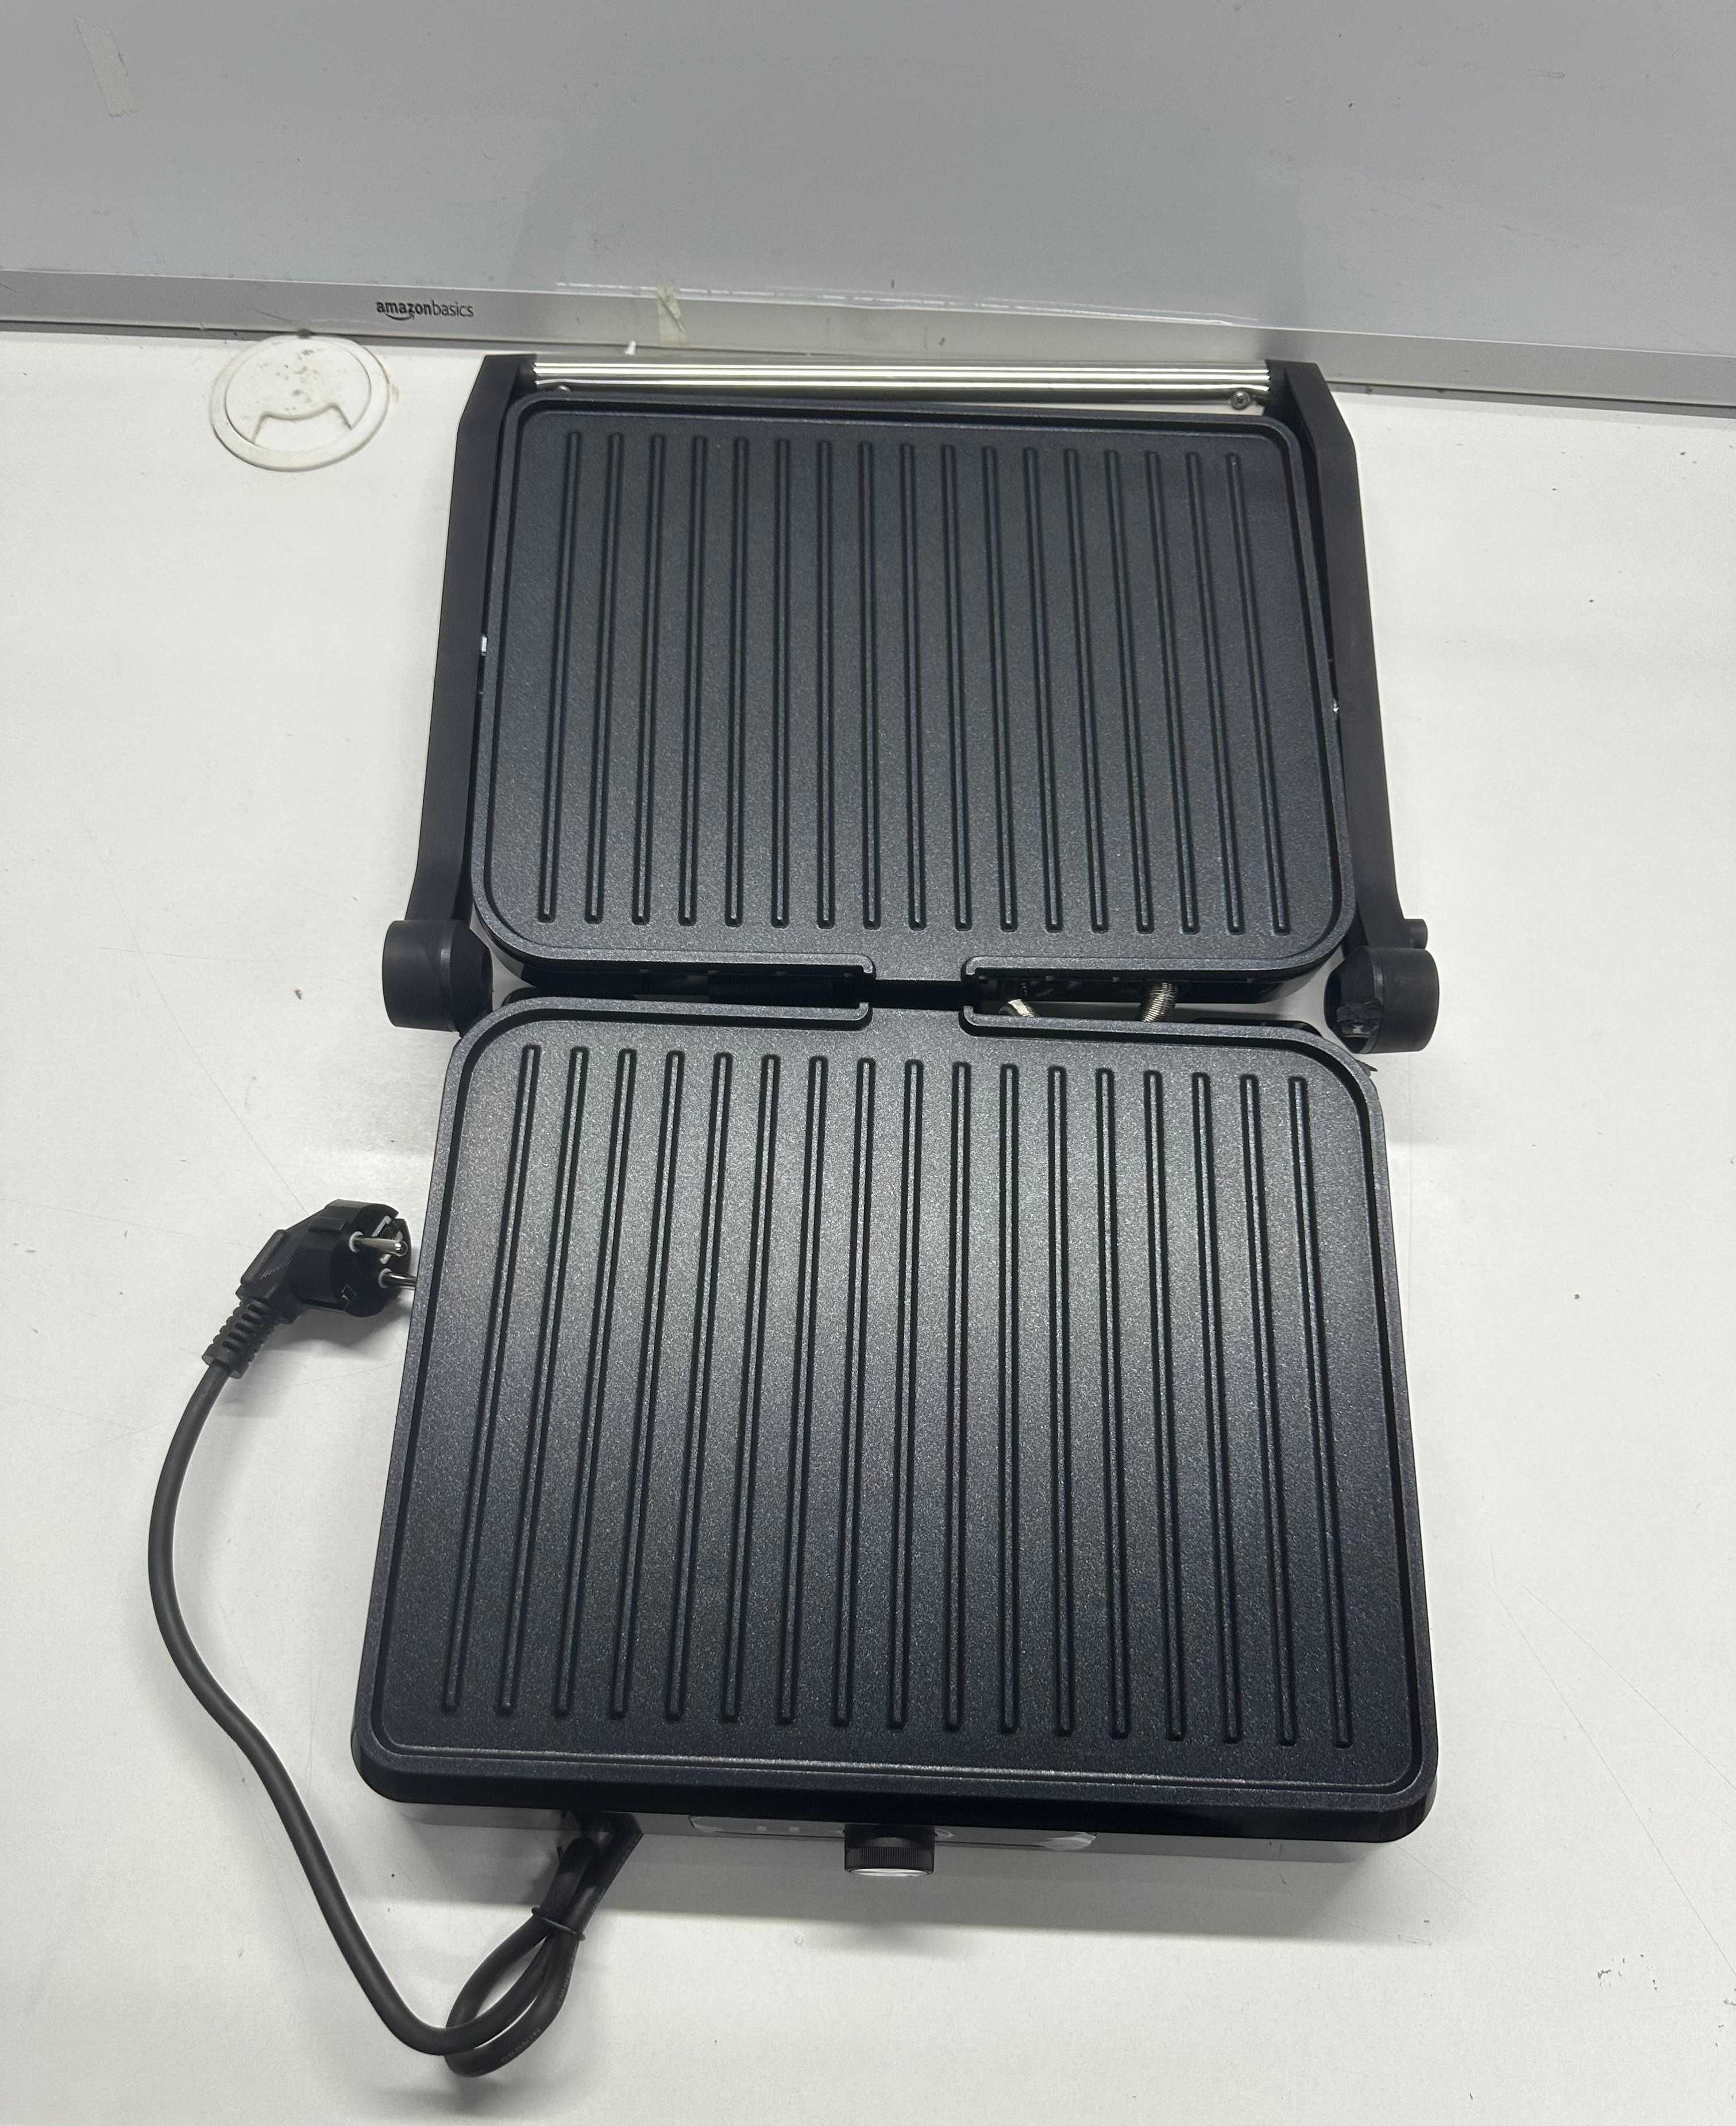 Tradycyjny grill elektryczny Tiastar AN603 srebrny/szary 2200 W P12A30